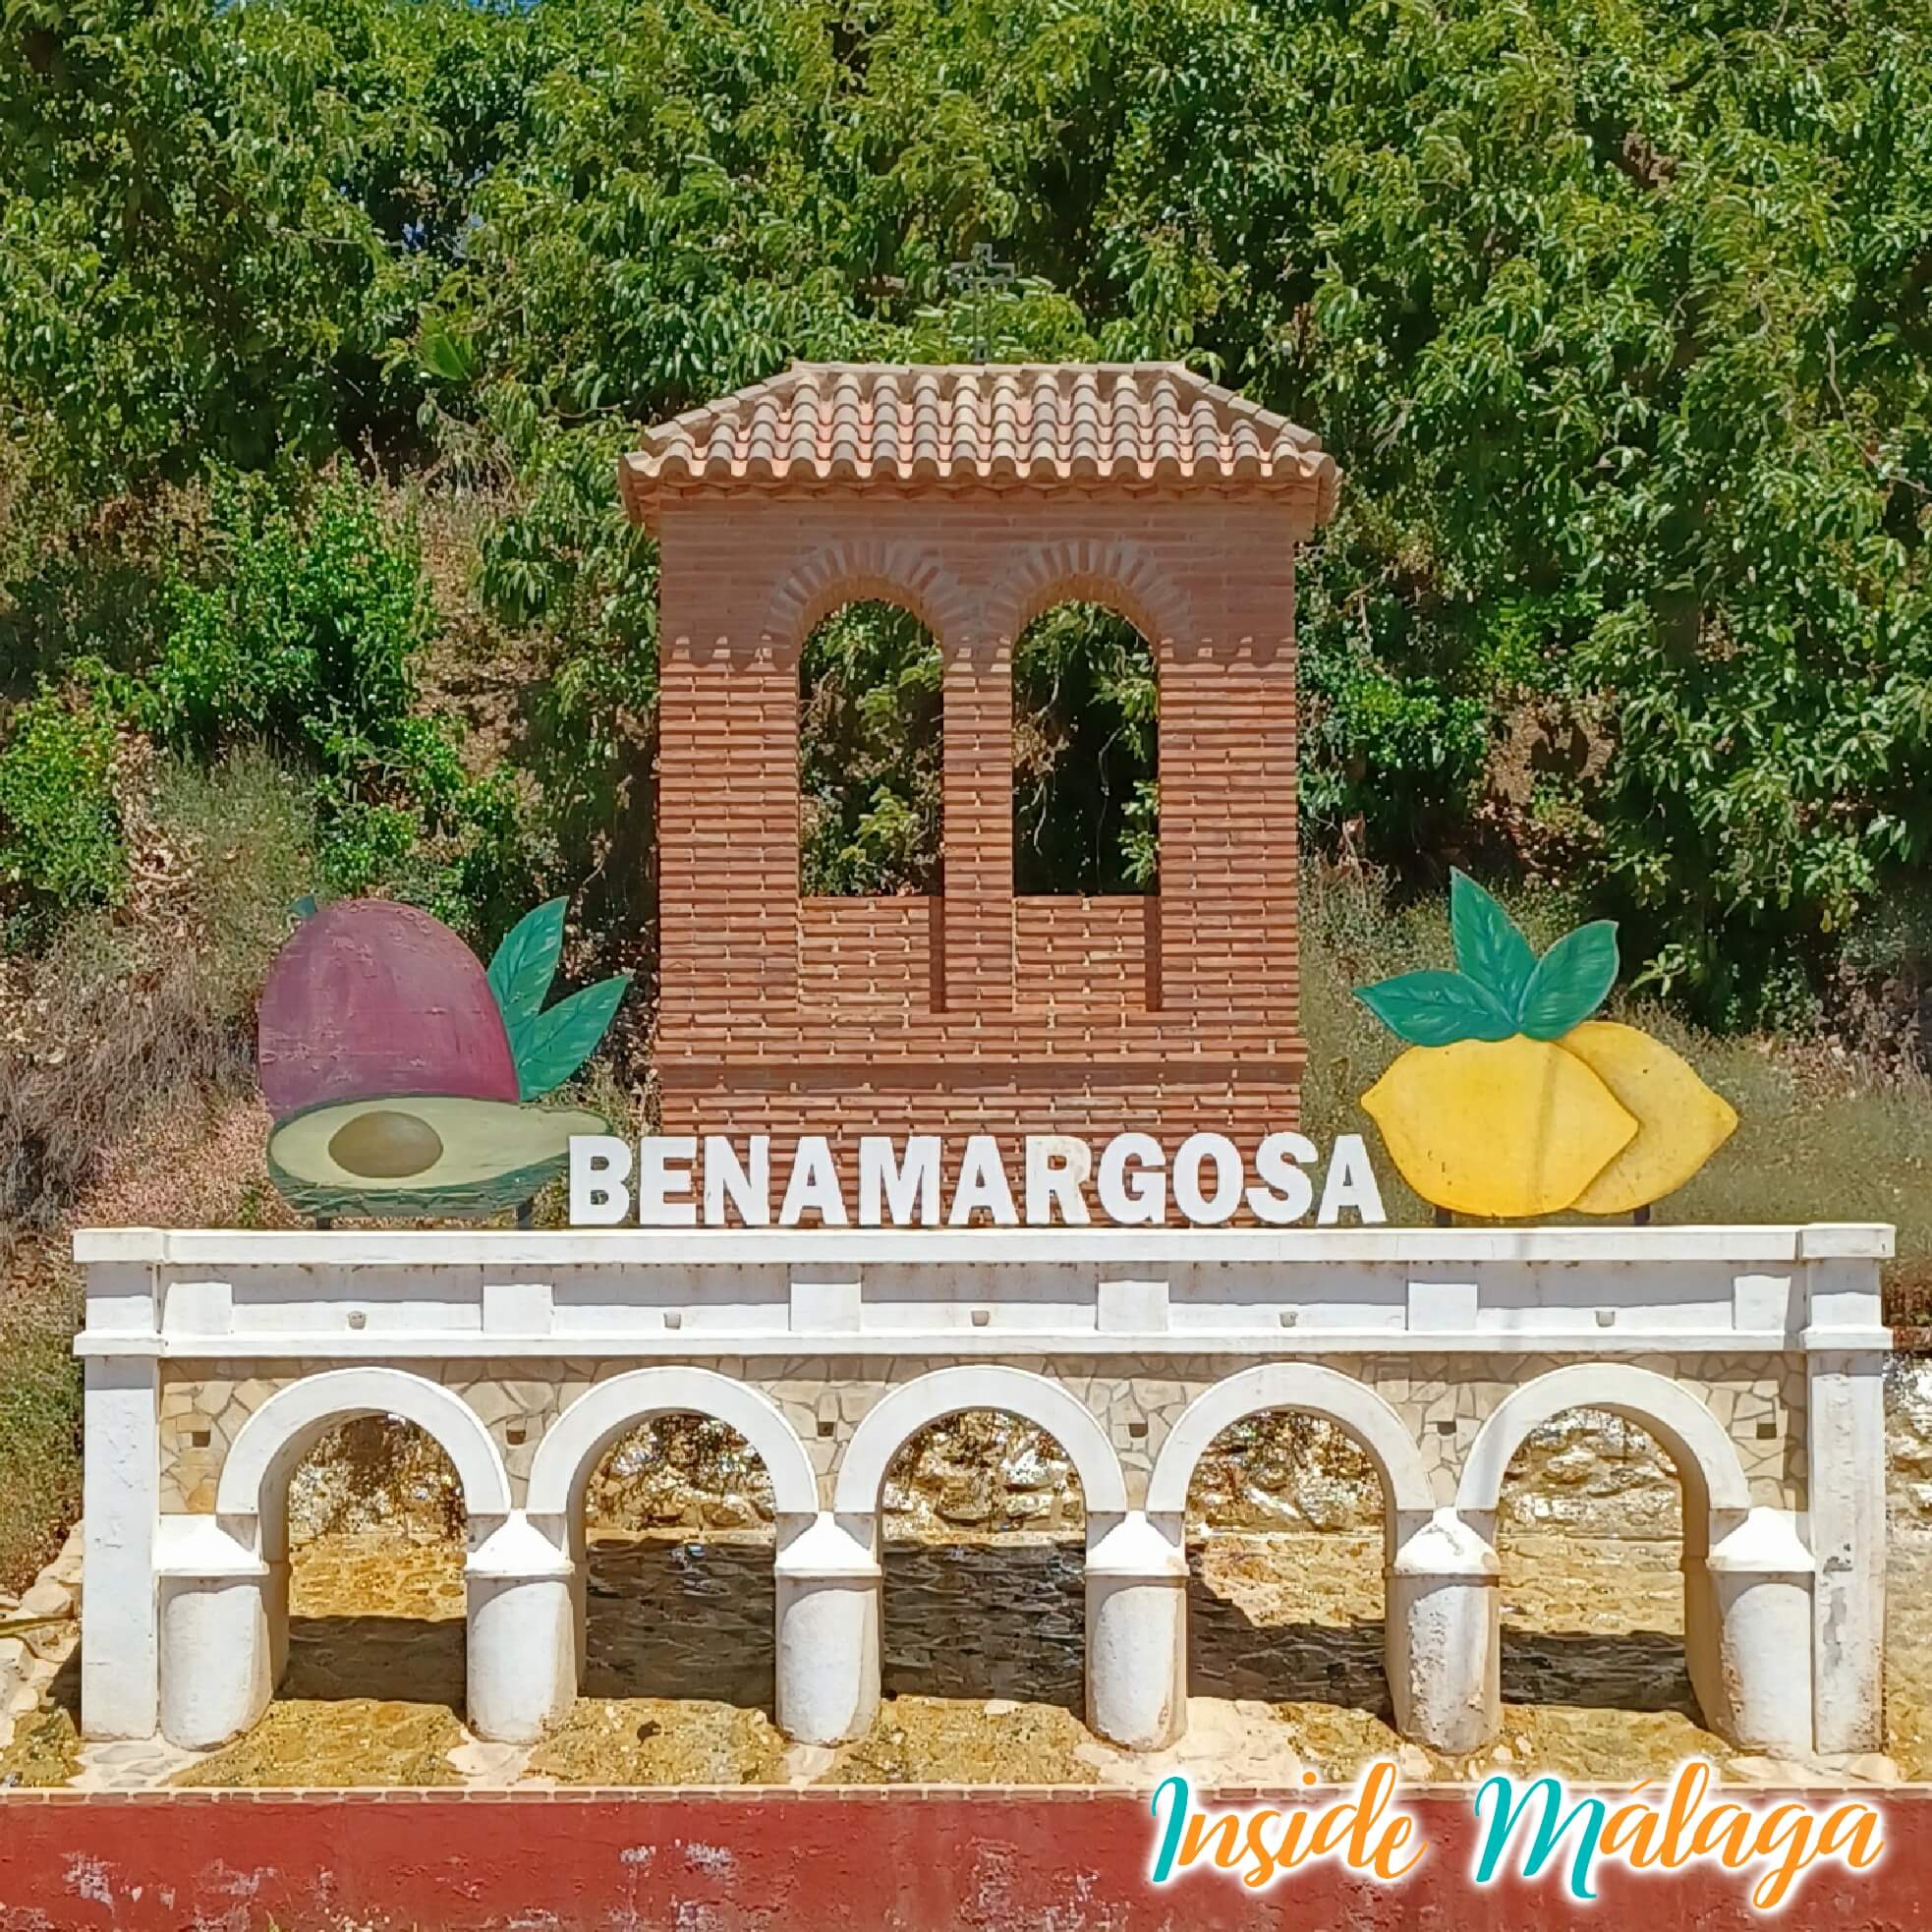 Benamargosa Cartel Pueblo Malaga